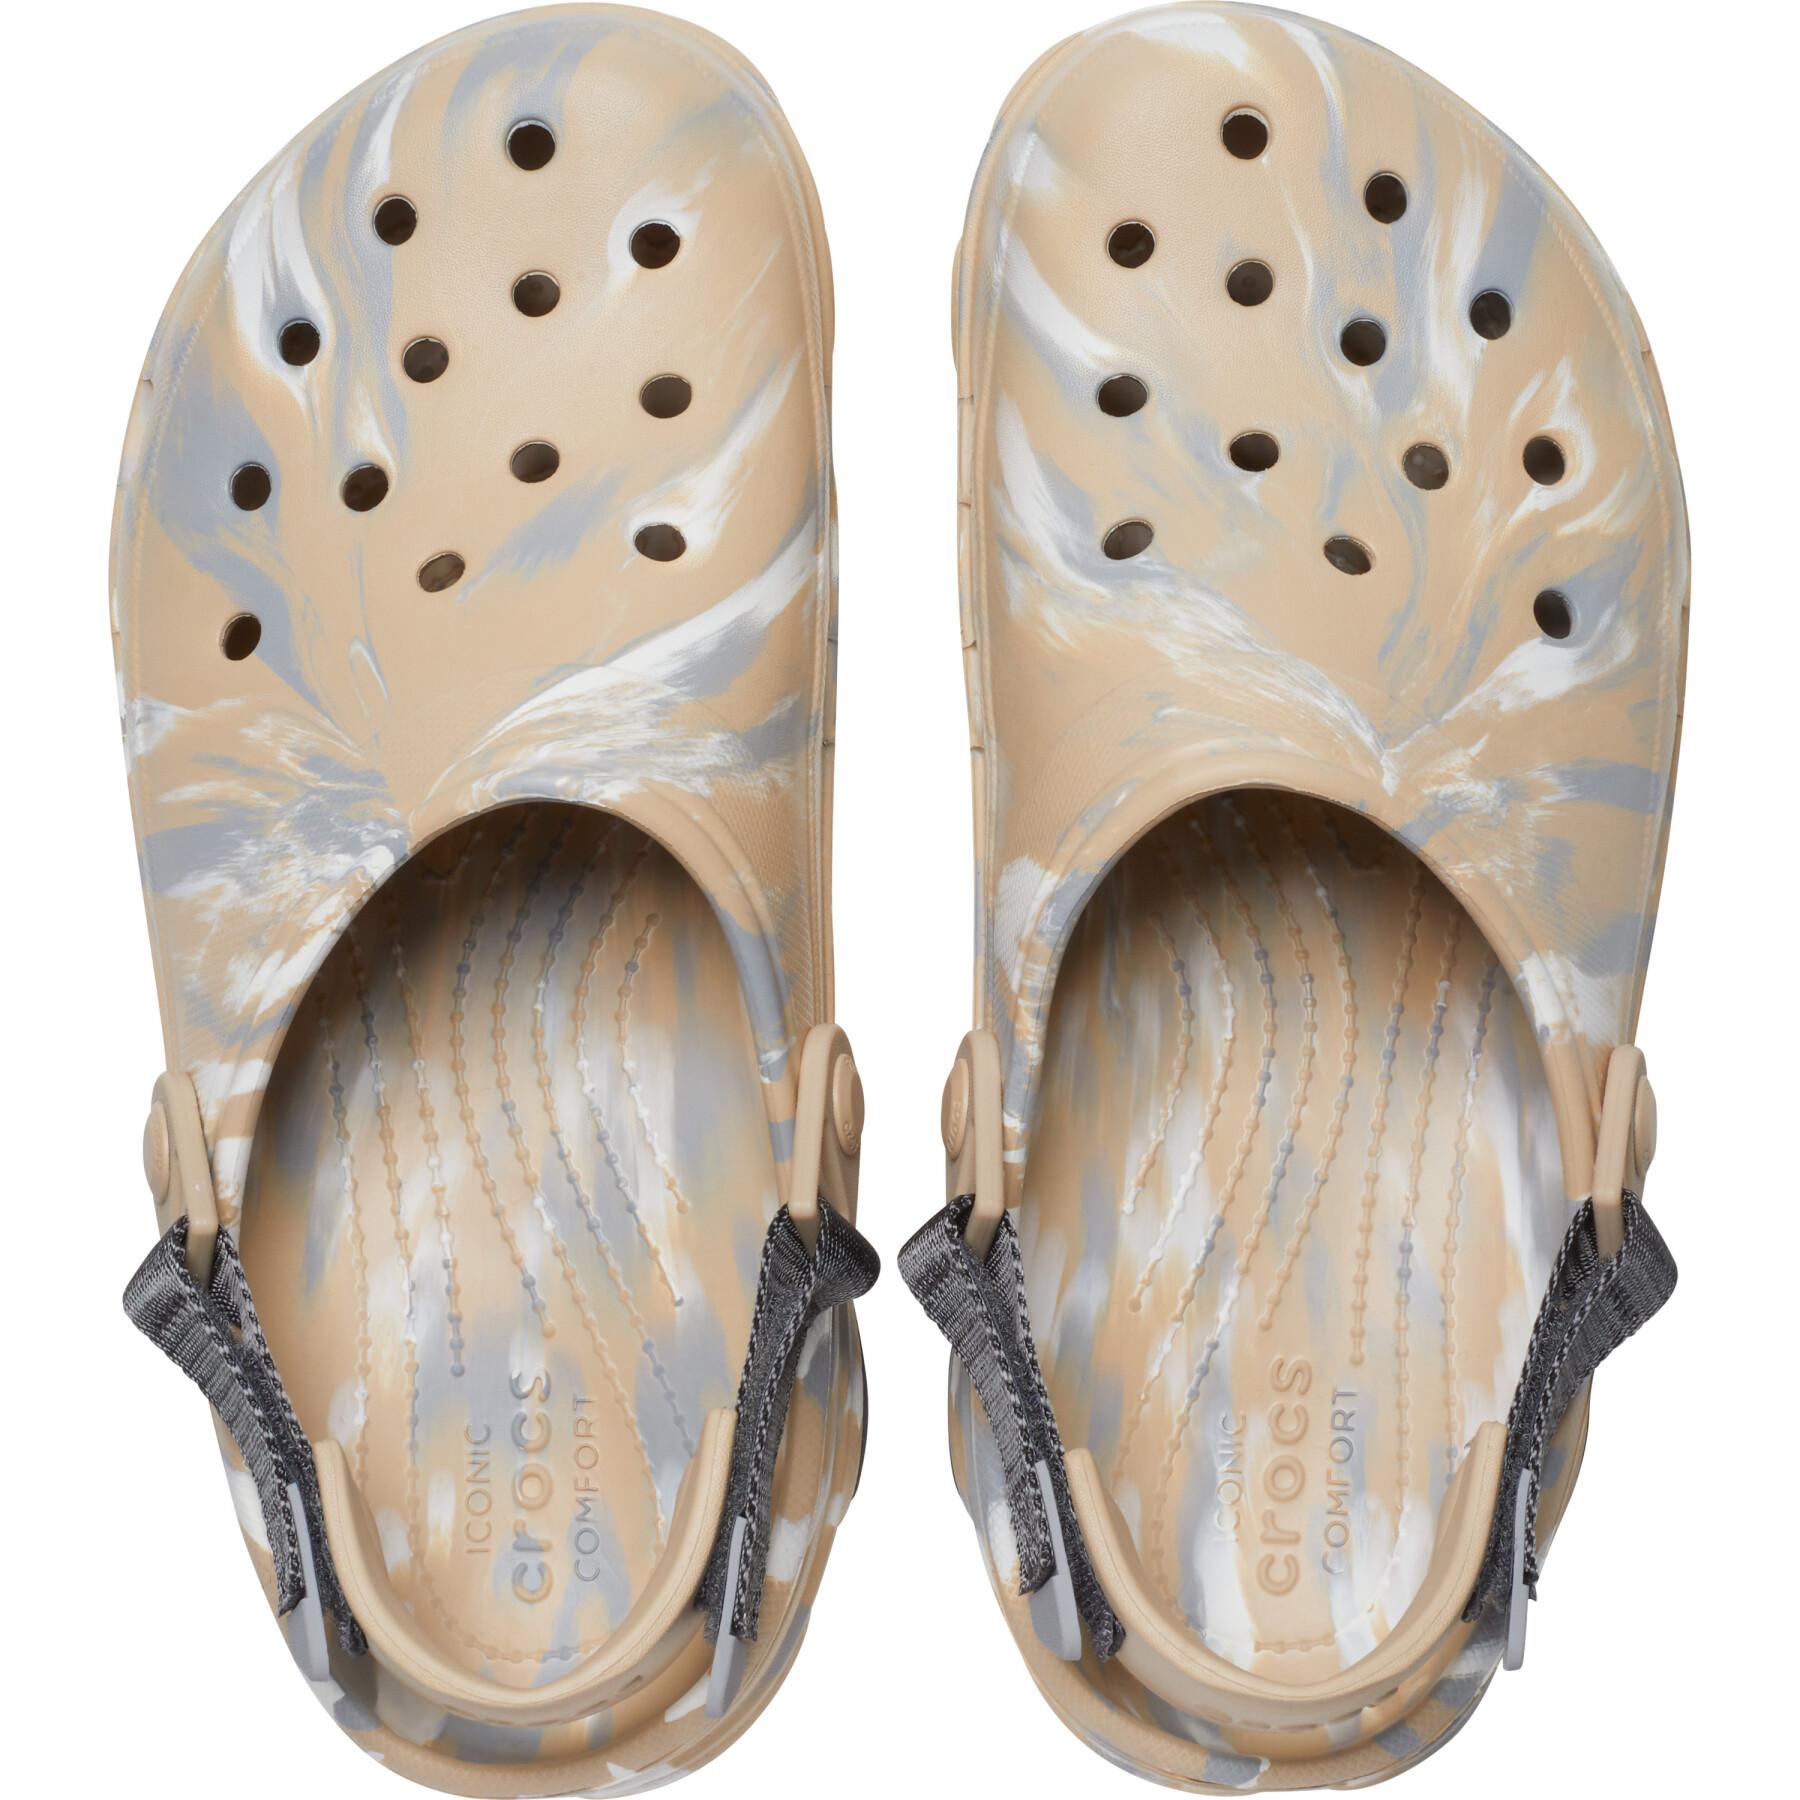 Sandals Crocs Classic All Terrain